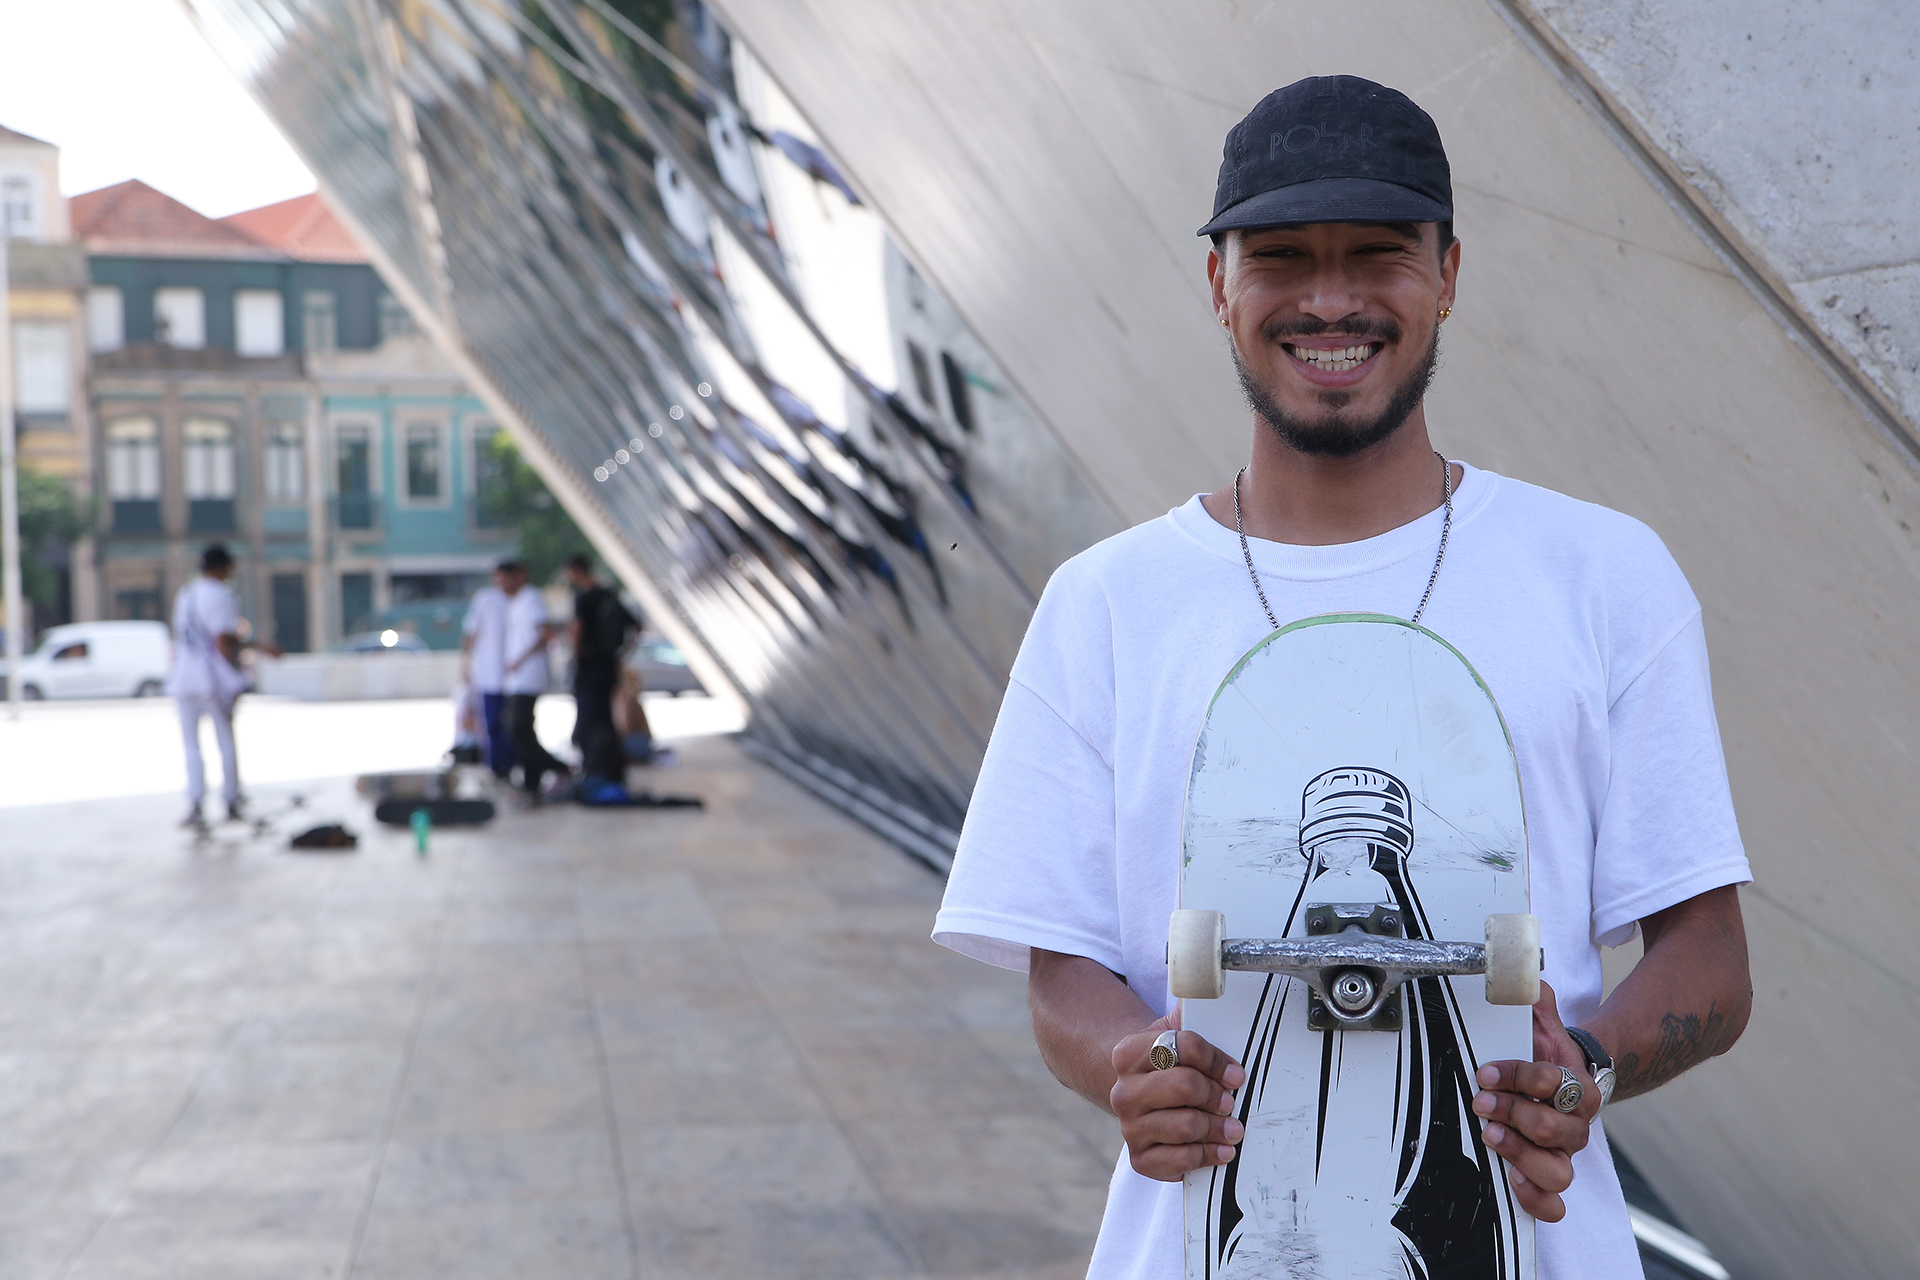 Skateboarding_Life_Renato_Lainho_com (16g)